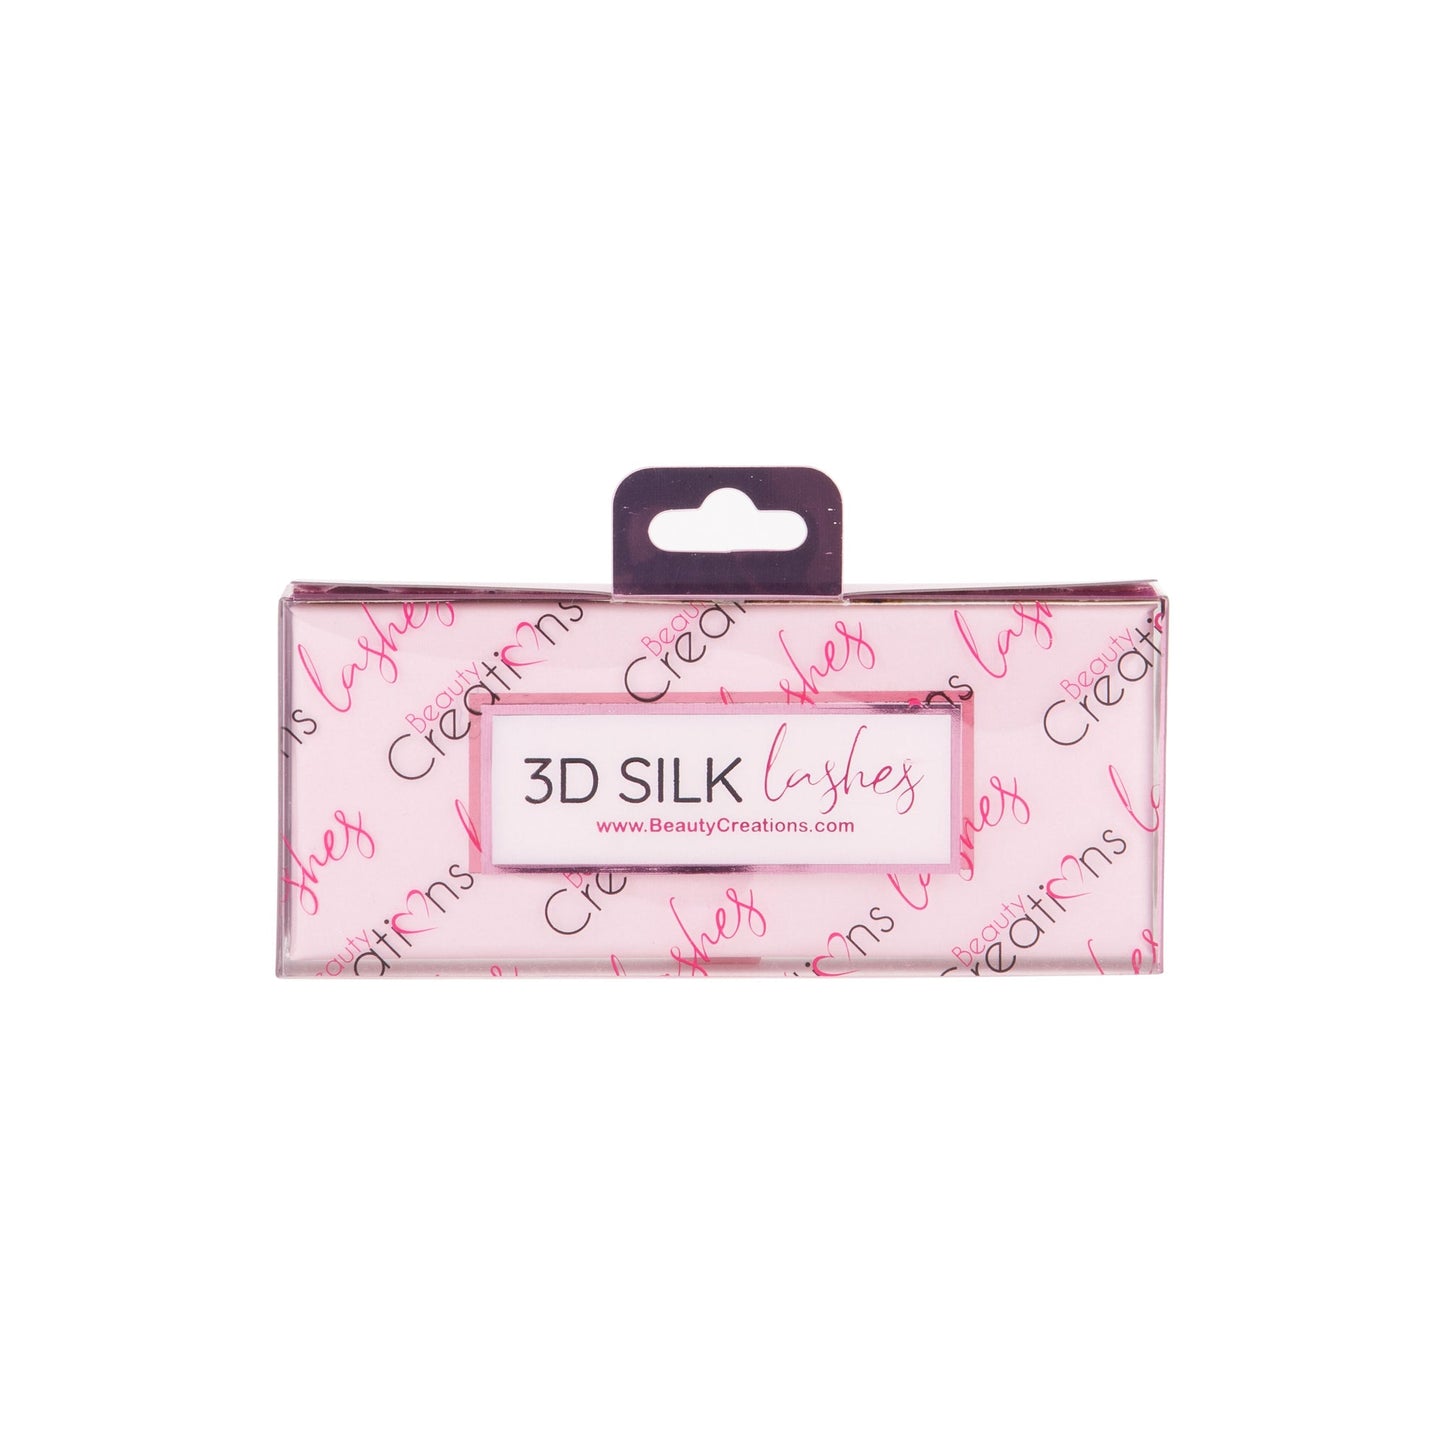 Mami - 3D Silk Lashes